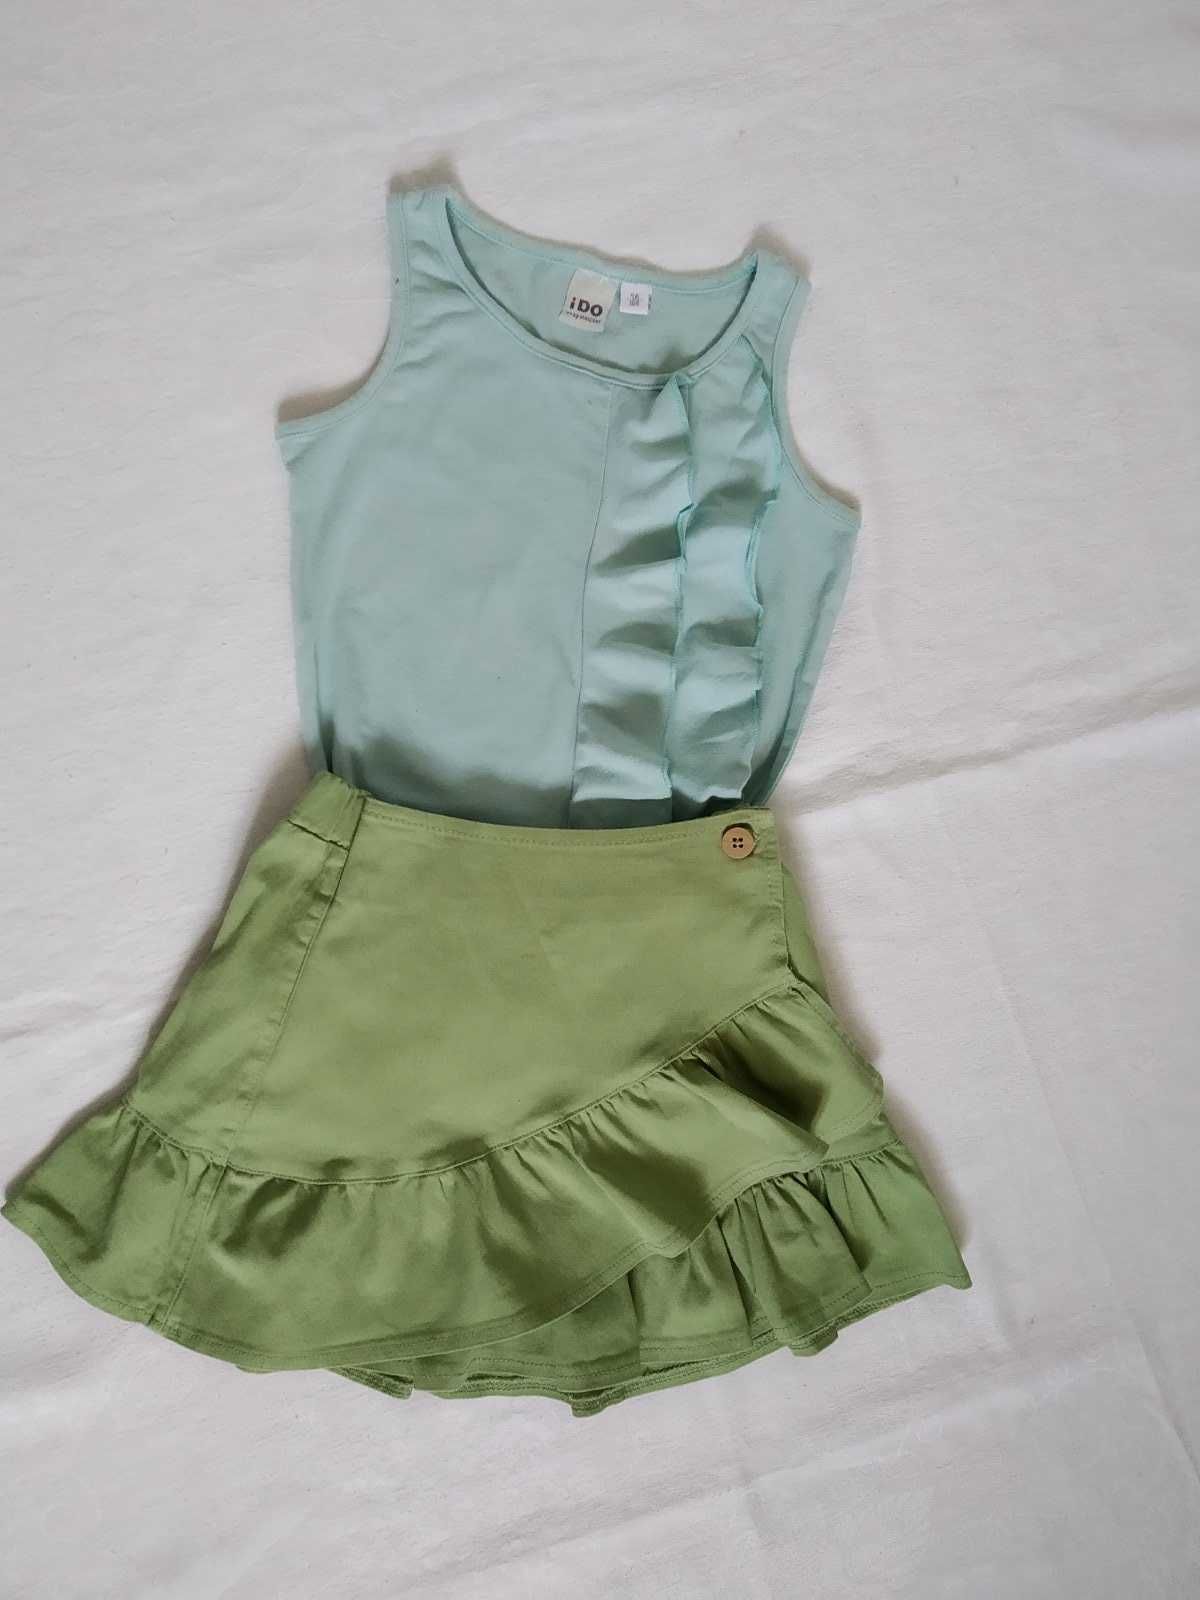 Стильная юбка Waikiki и футболки Fox&bunny Ido для девочки, 4-5 лет.